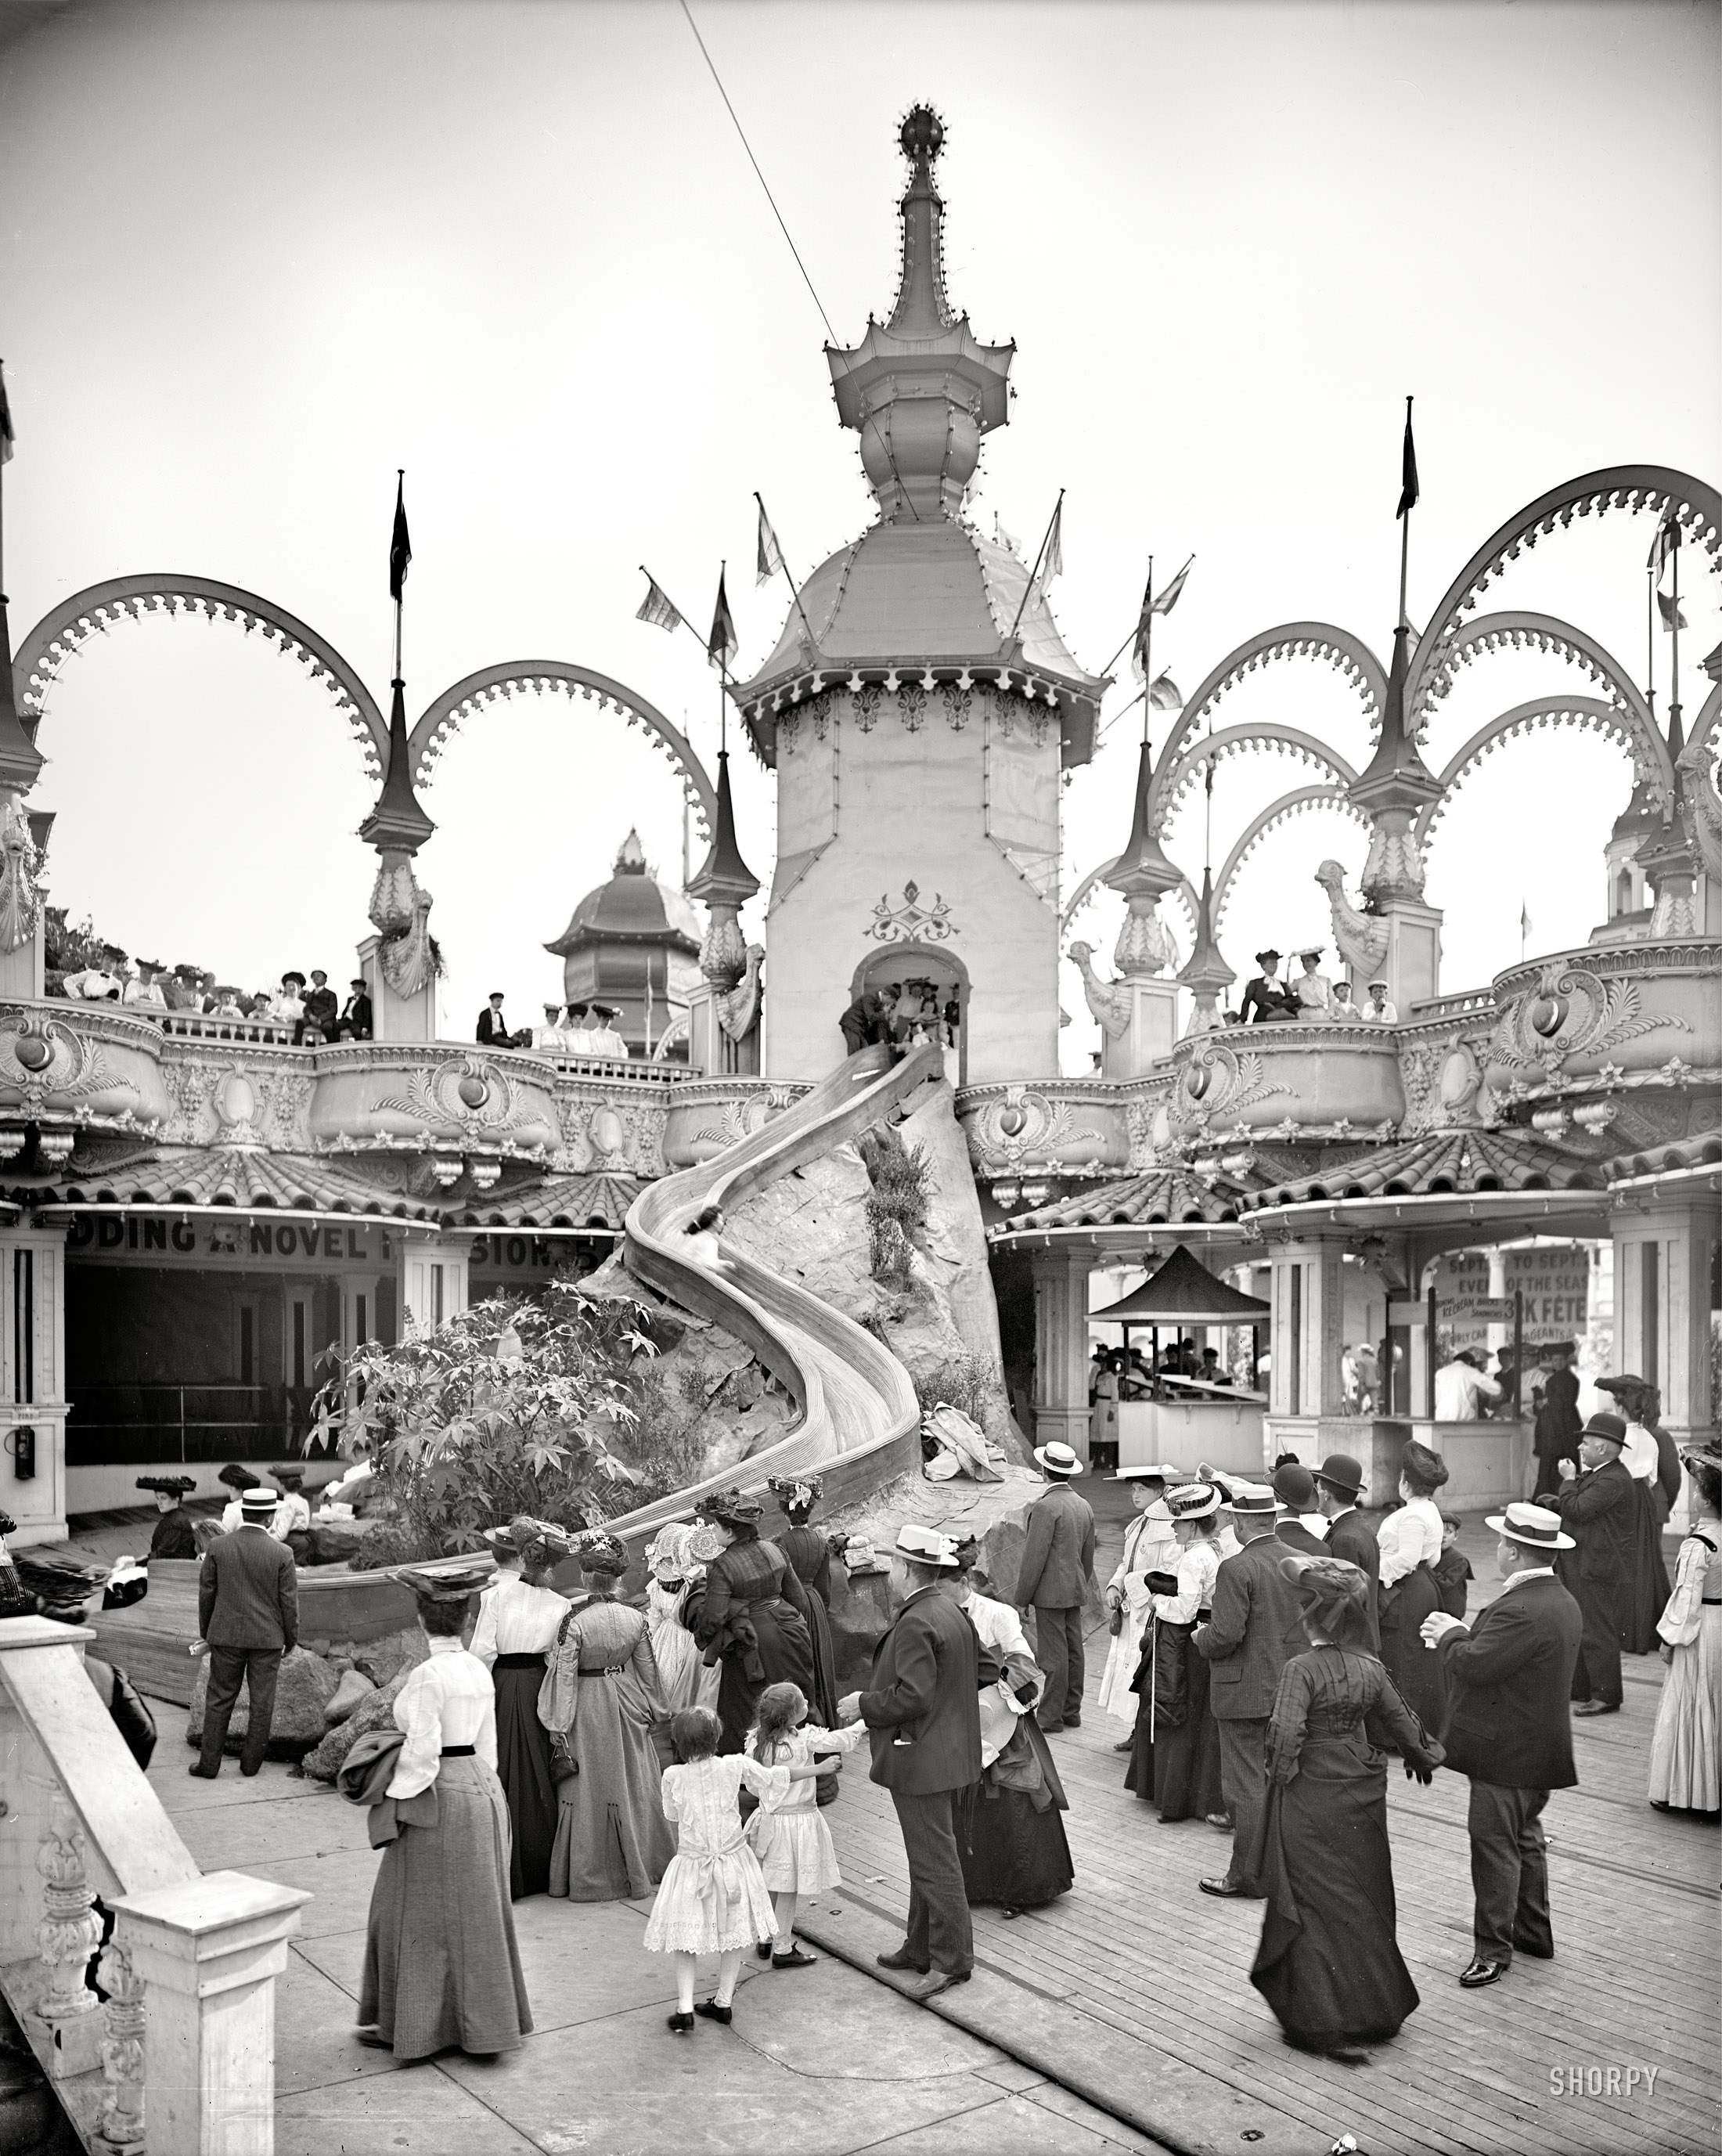  The Helter Skelter Ride, Luna Park, 1905. (h/t Shorpy) 